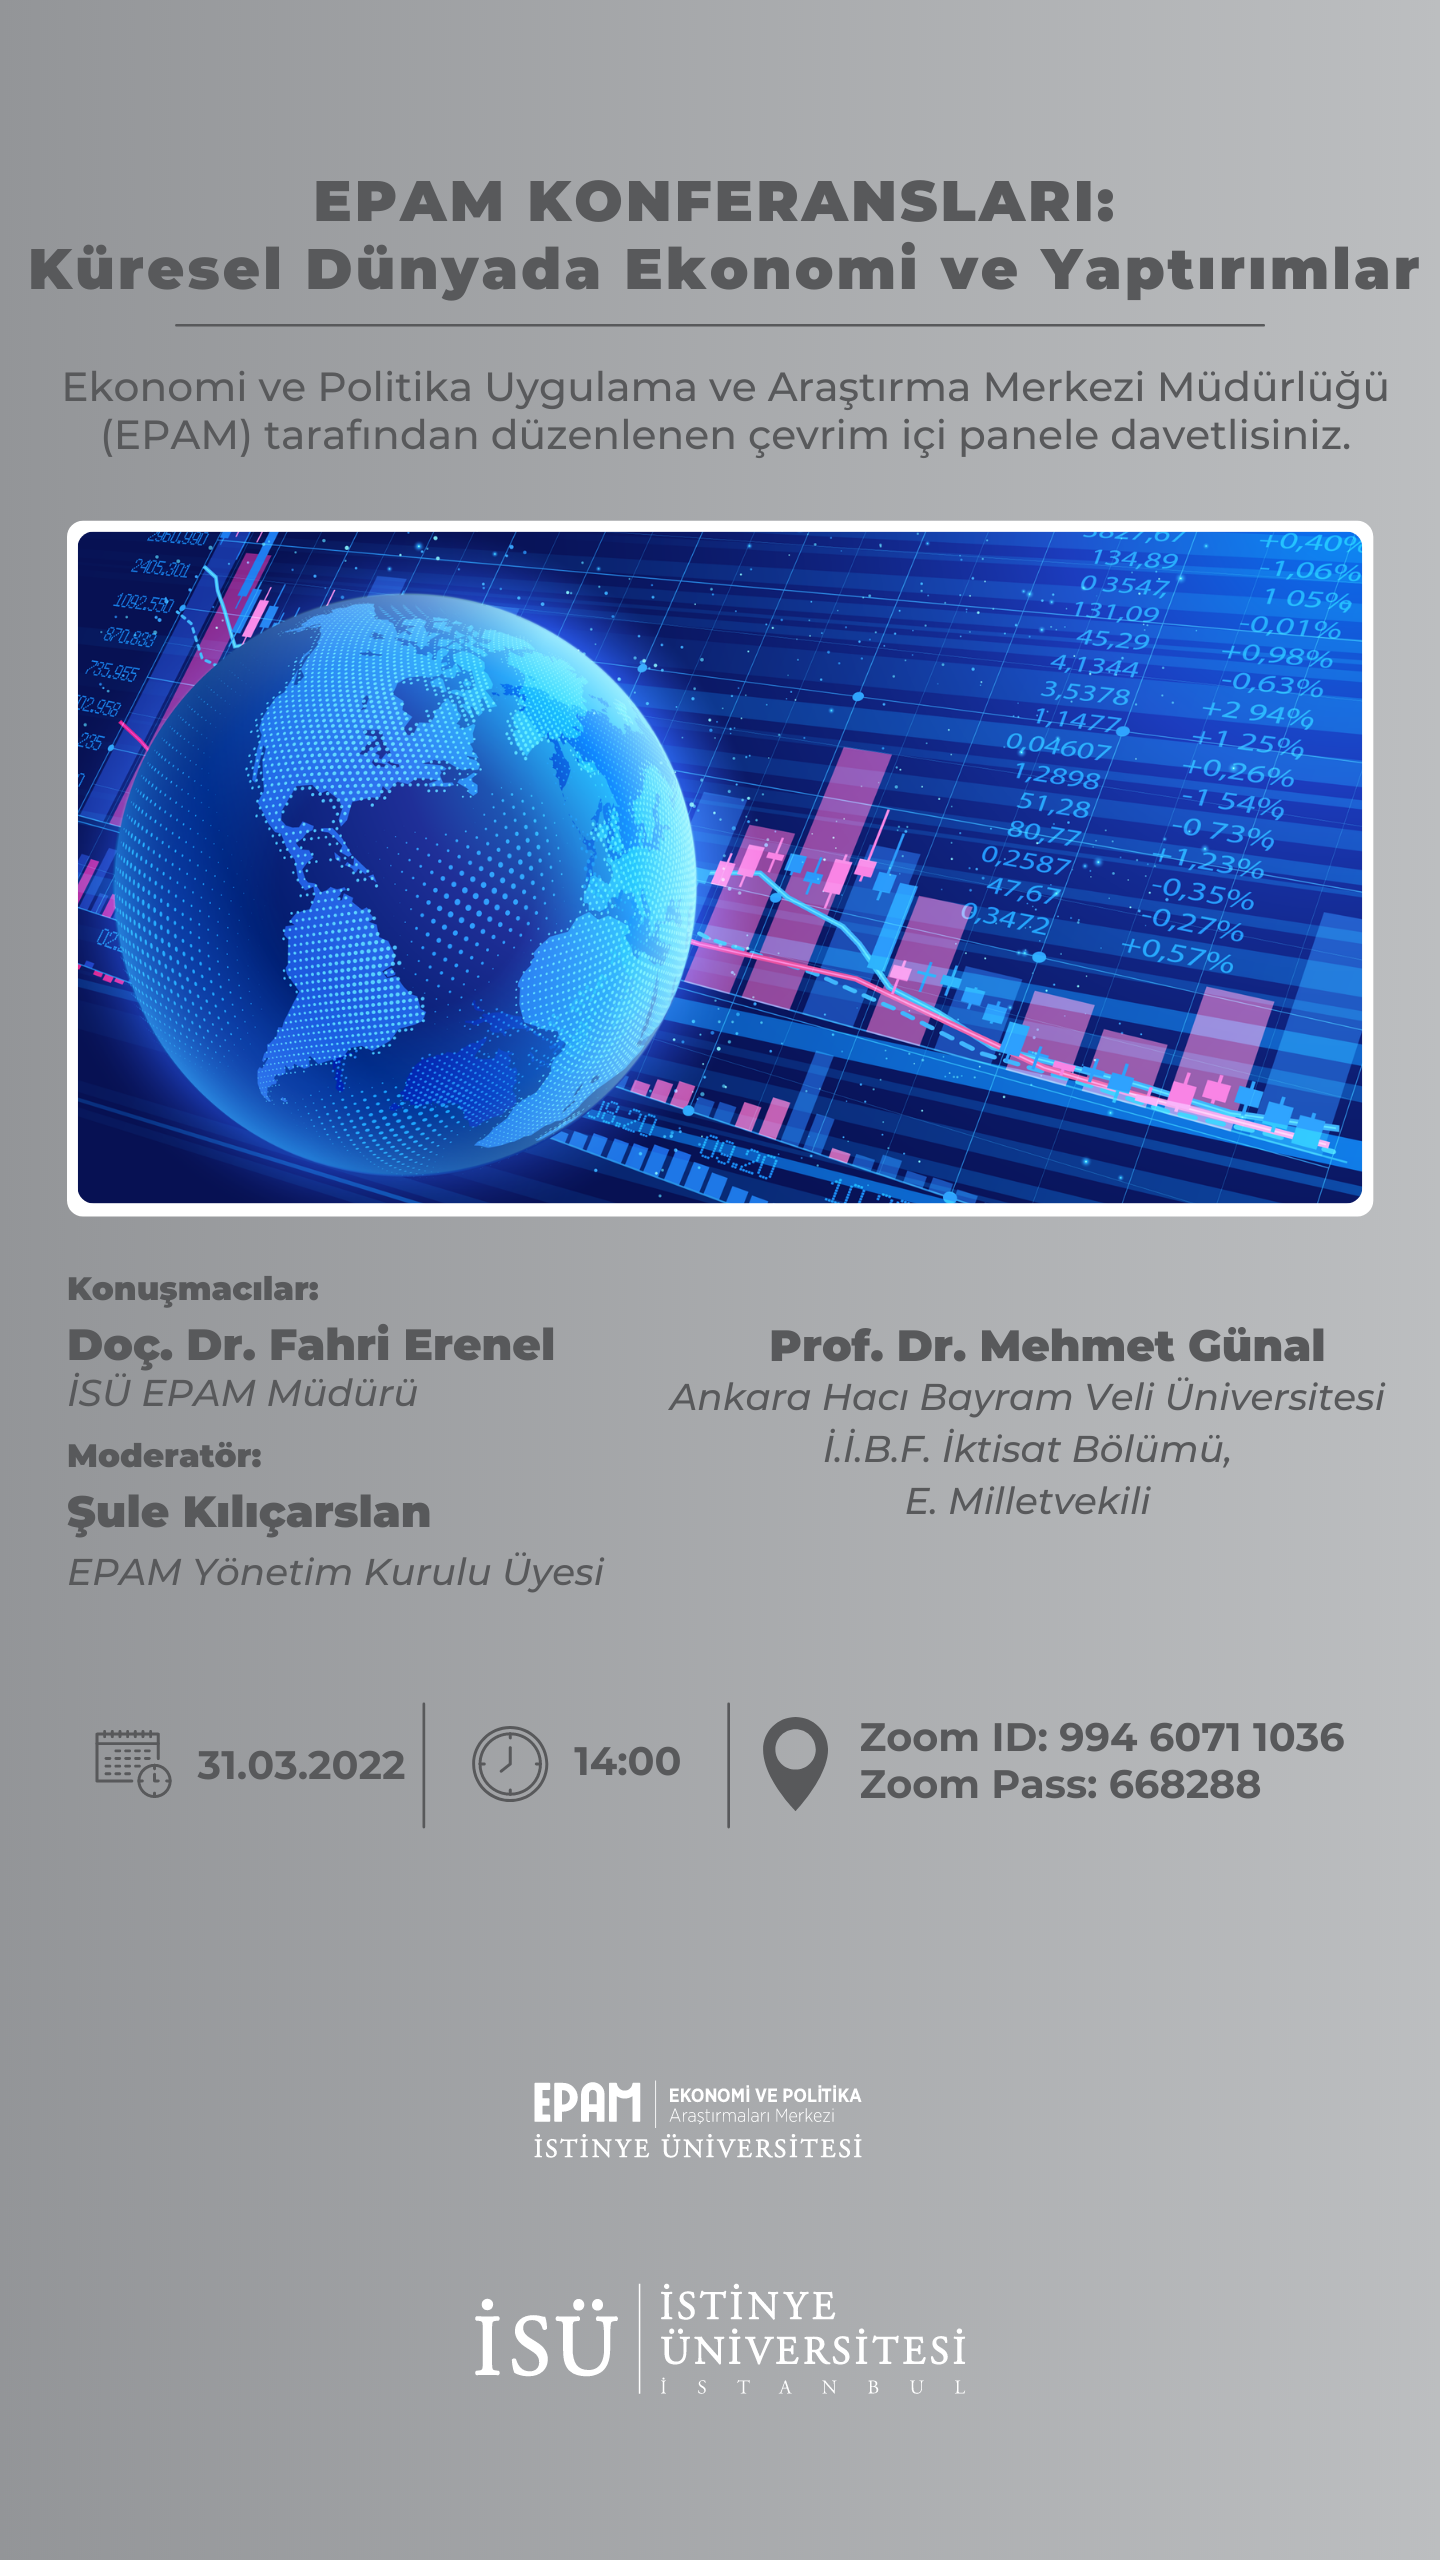 EPAM Konferansları: Küresel Dünyada Ekonomi ve Yaptırımlar